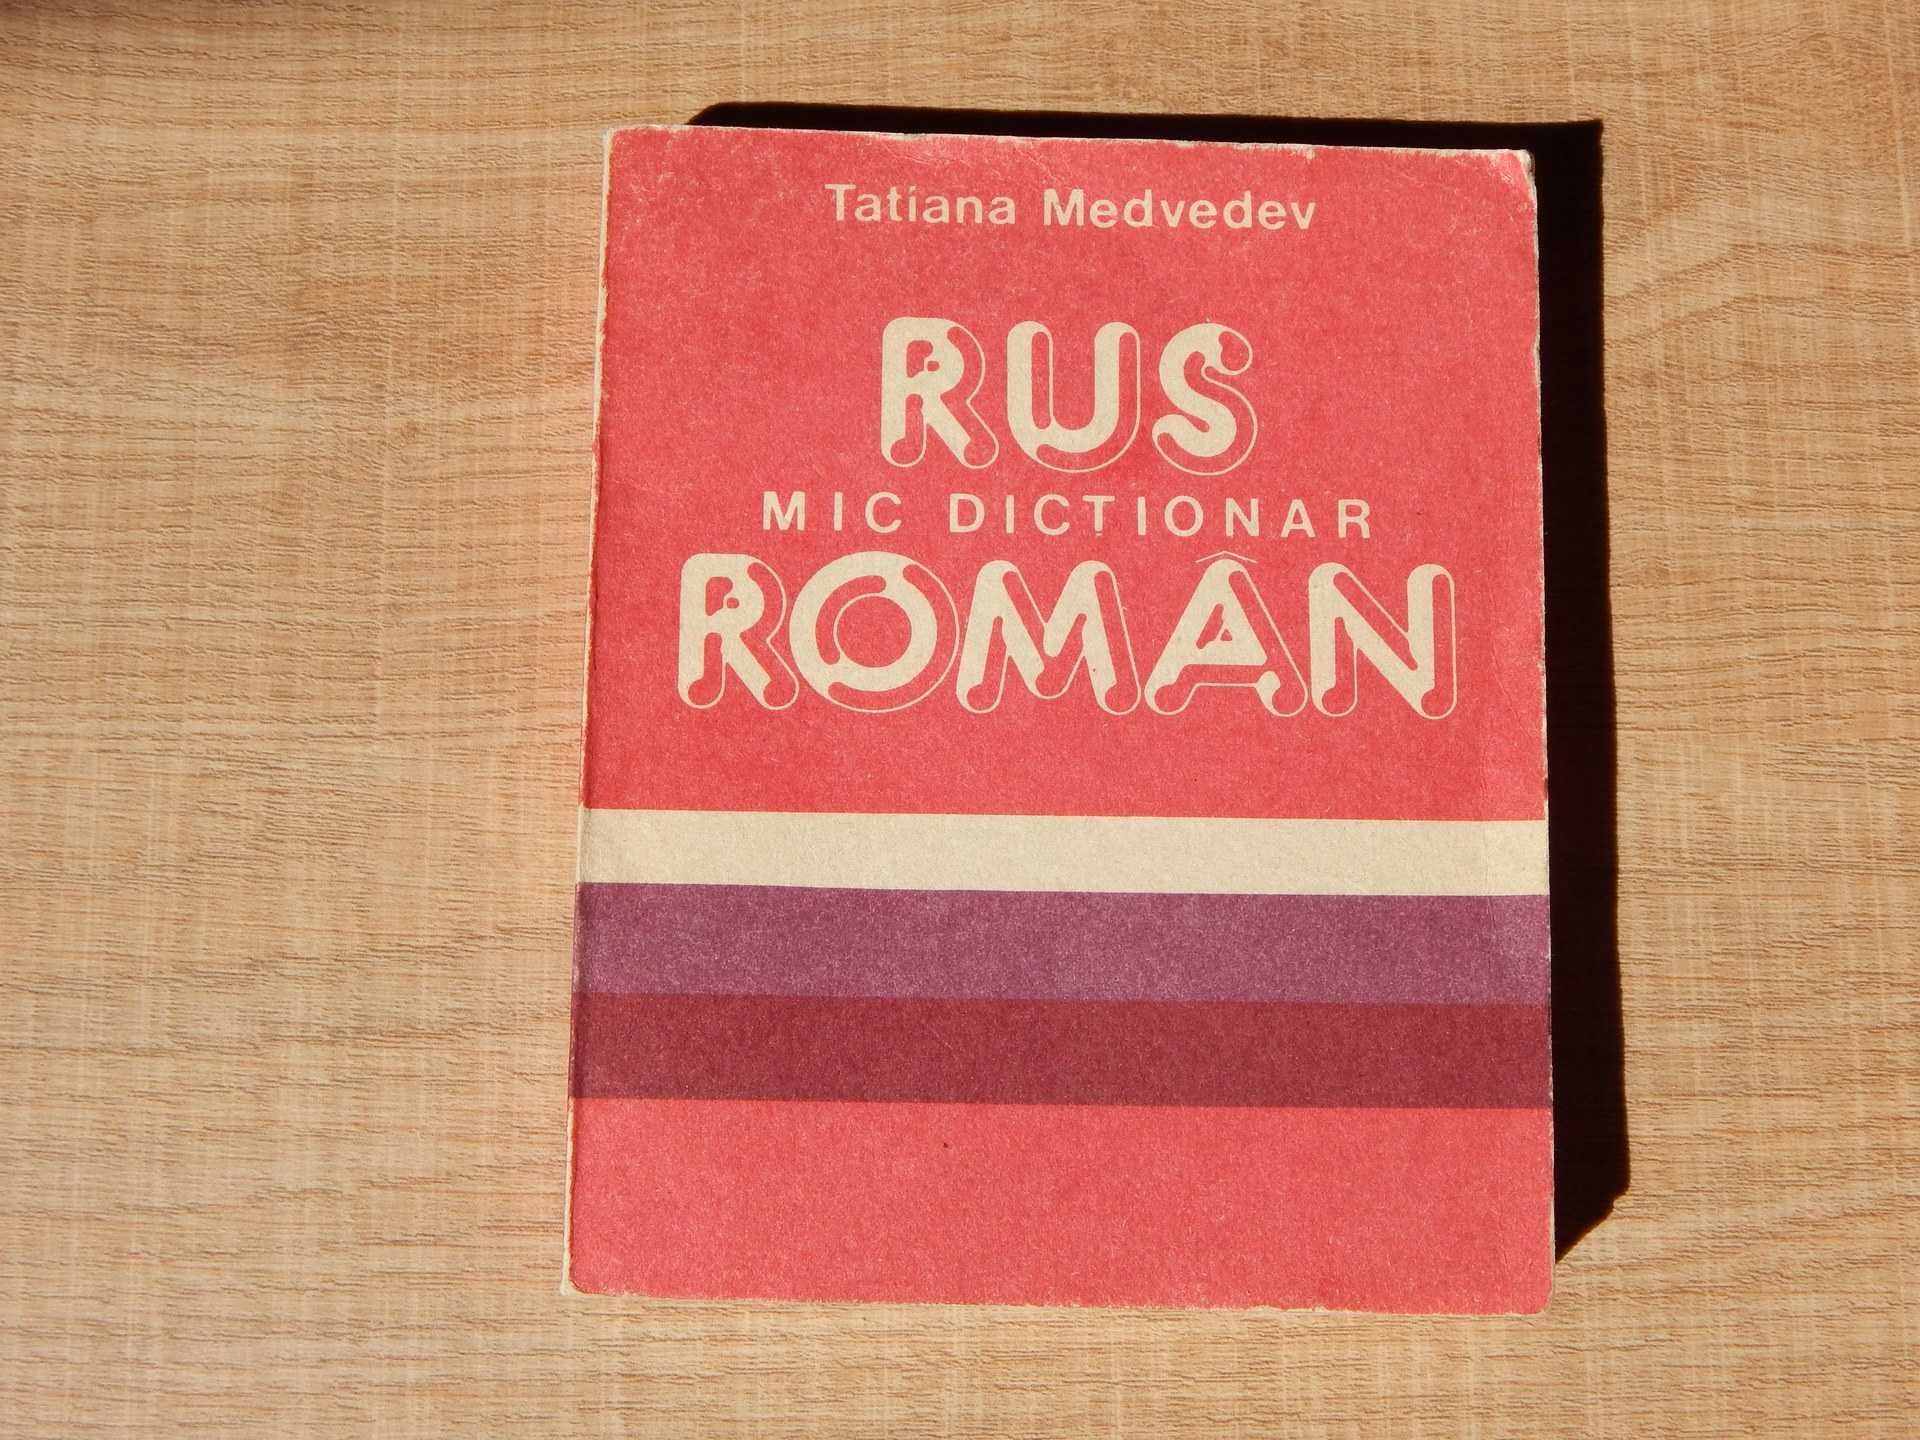 Set 2 dictionare roman-rus rus-roman Tatiana Medvedev 1989